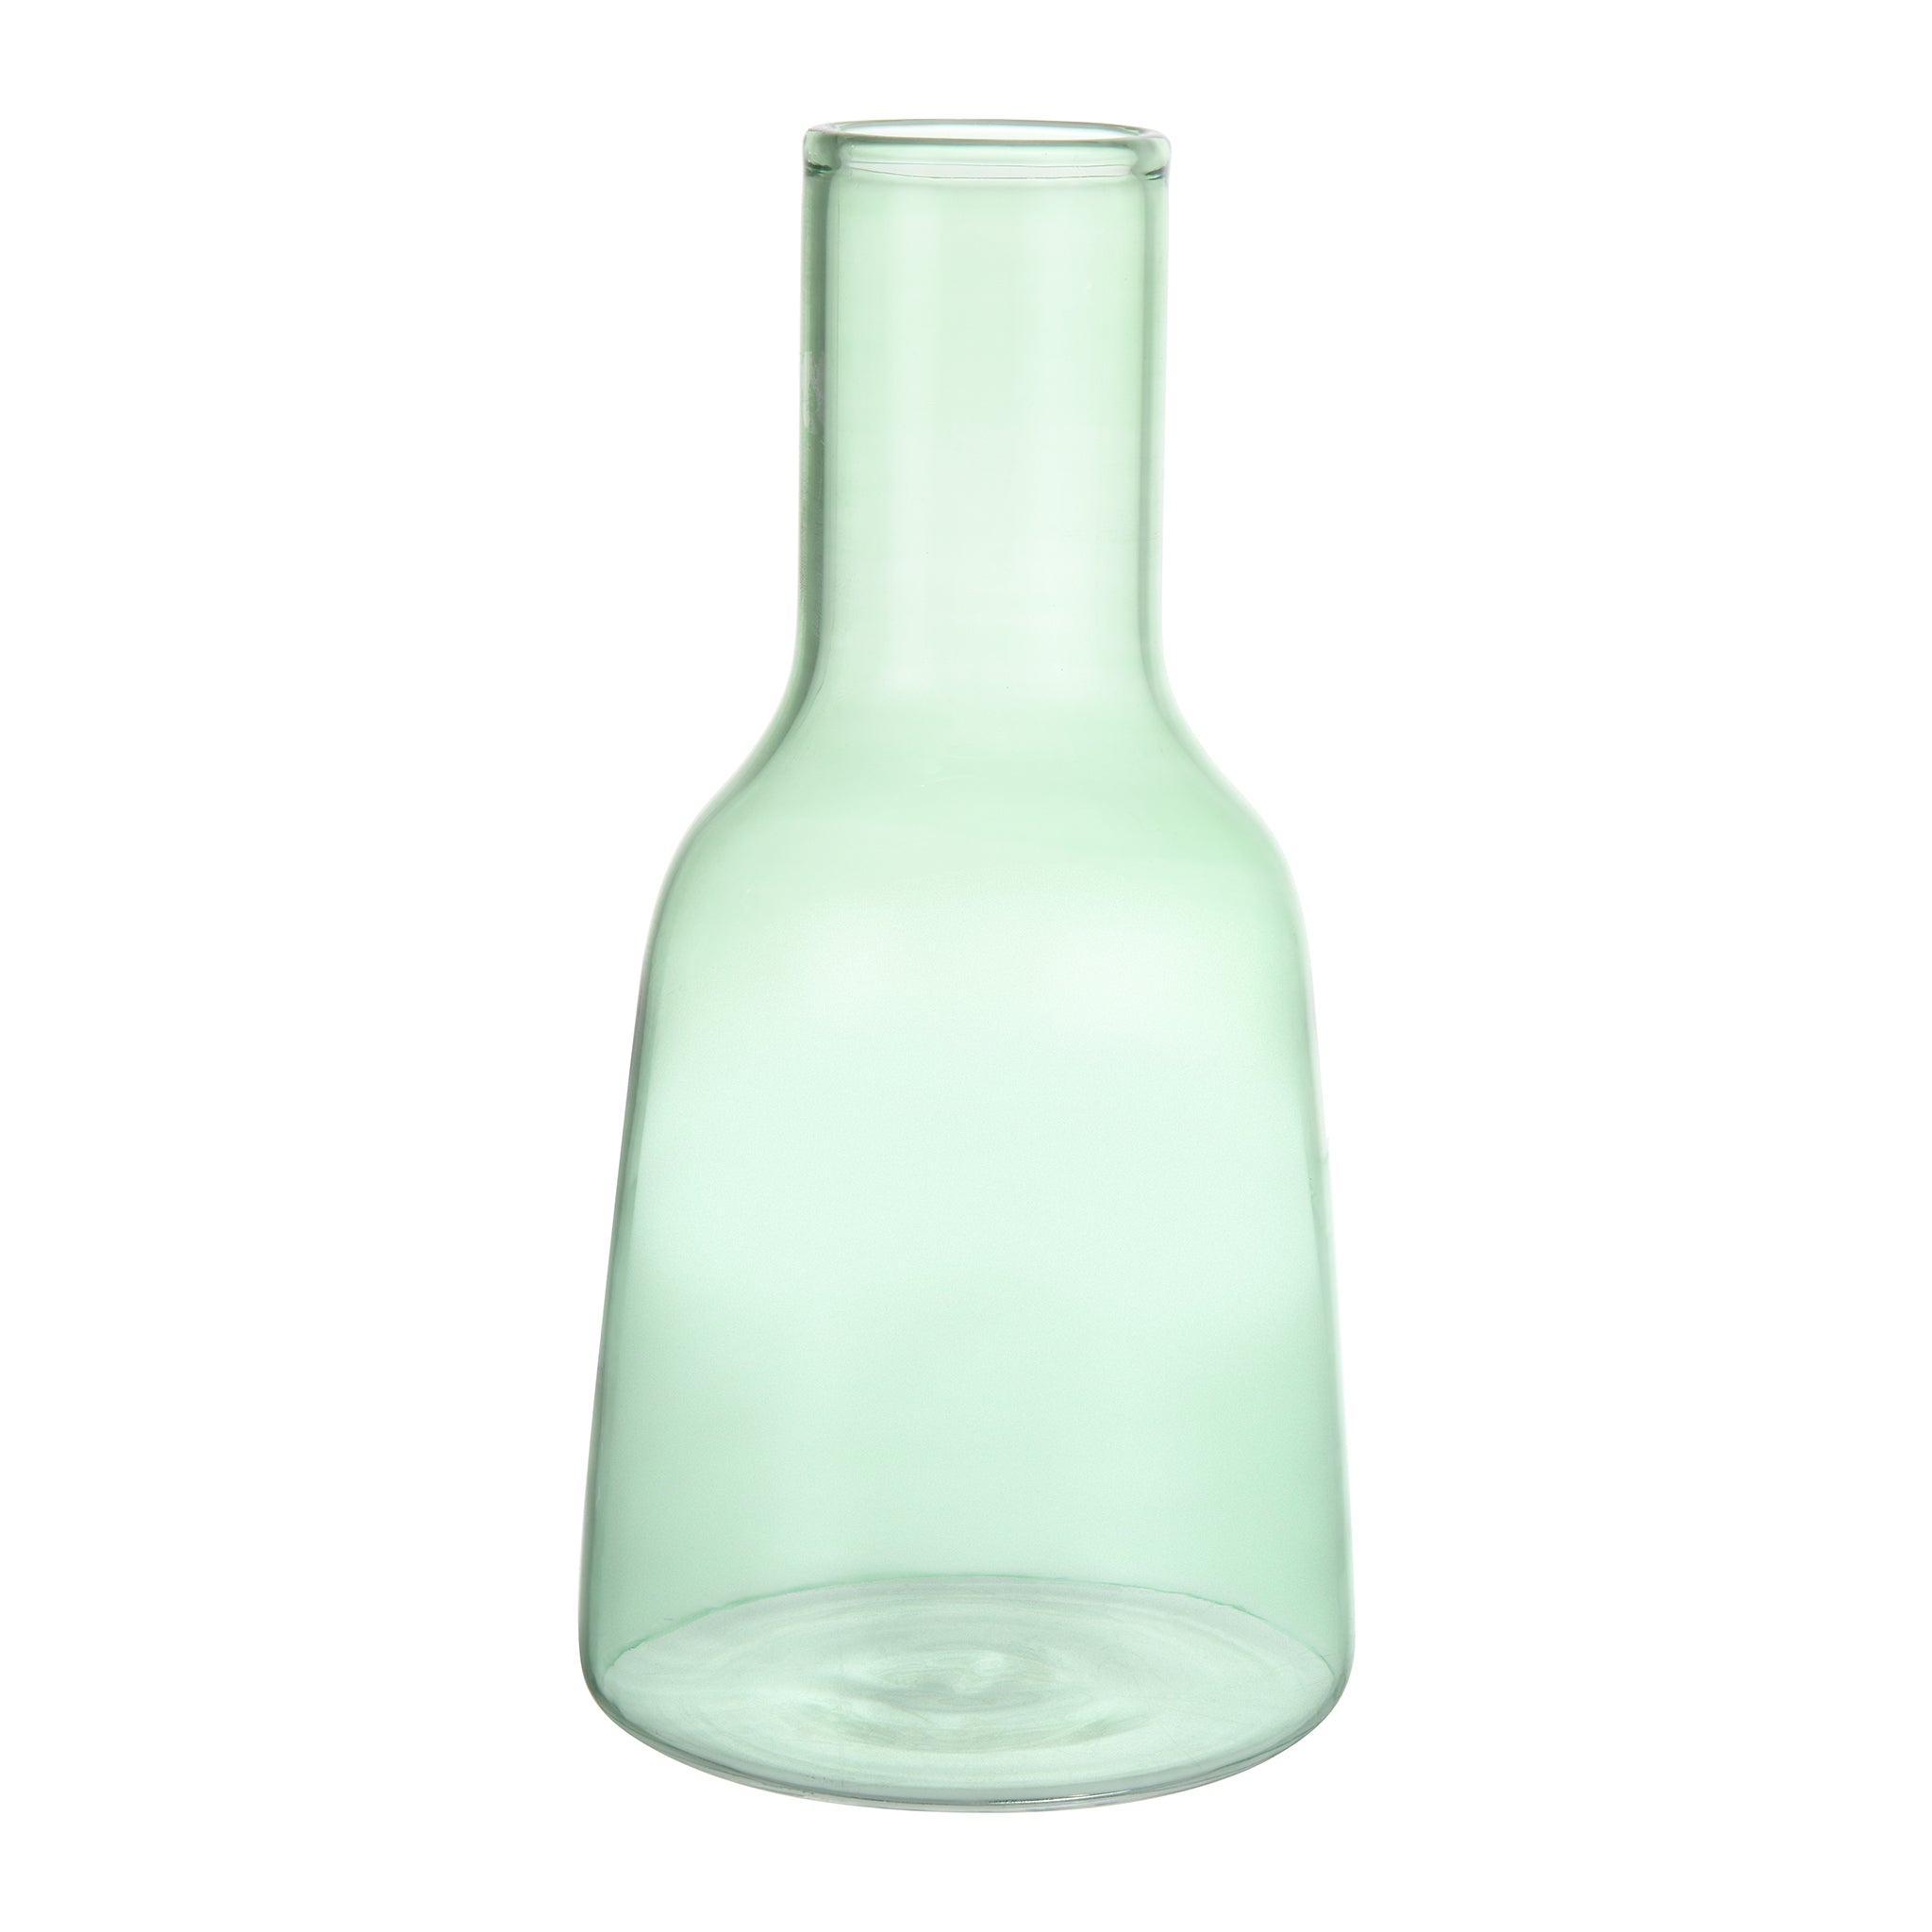 Senzo - Green Flower Vase - 22cm - 7400039